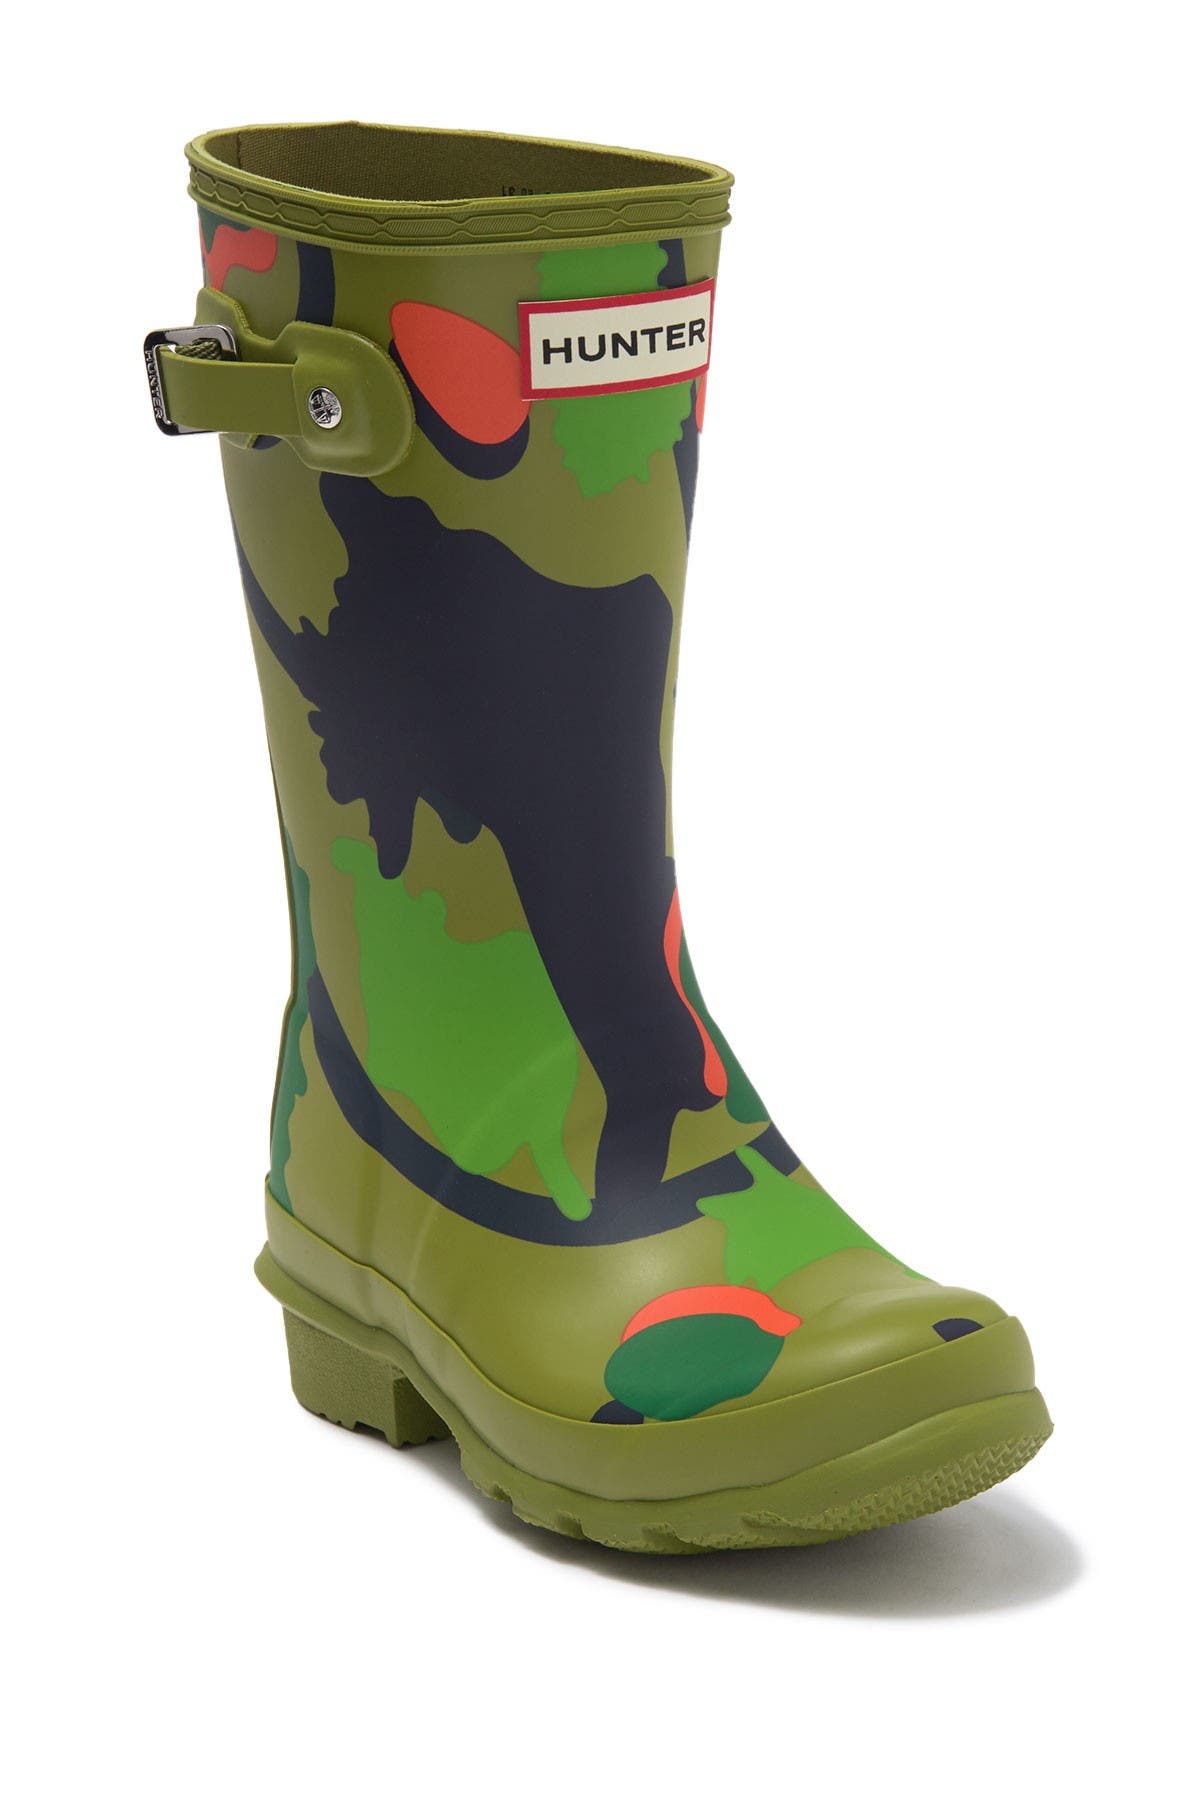 nearest hunter boots store